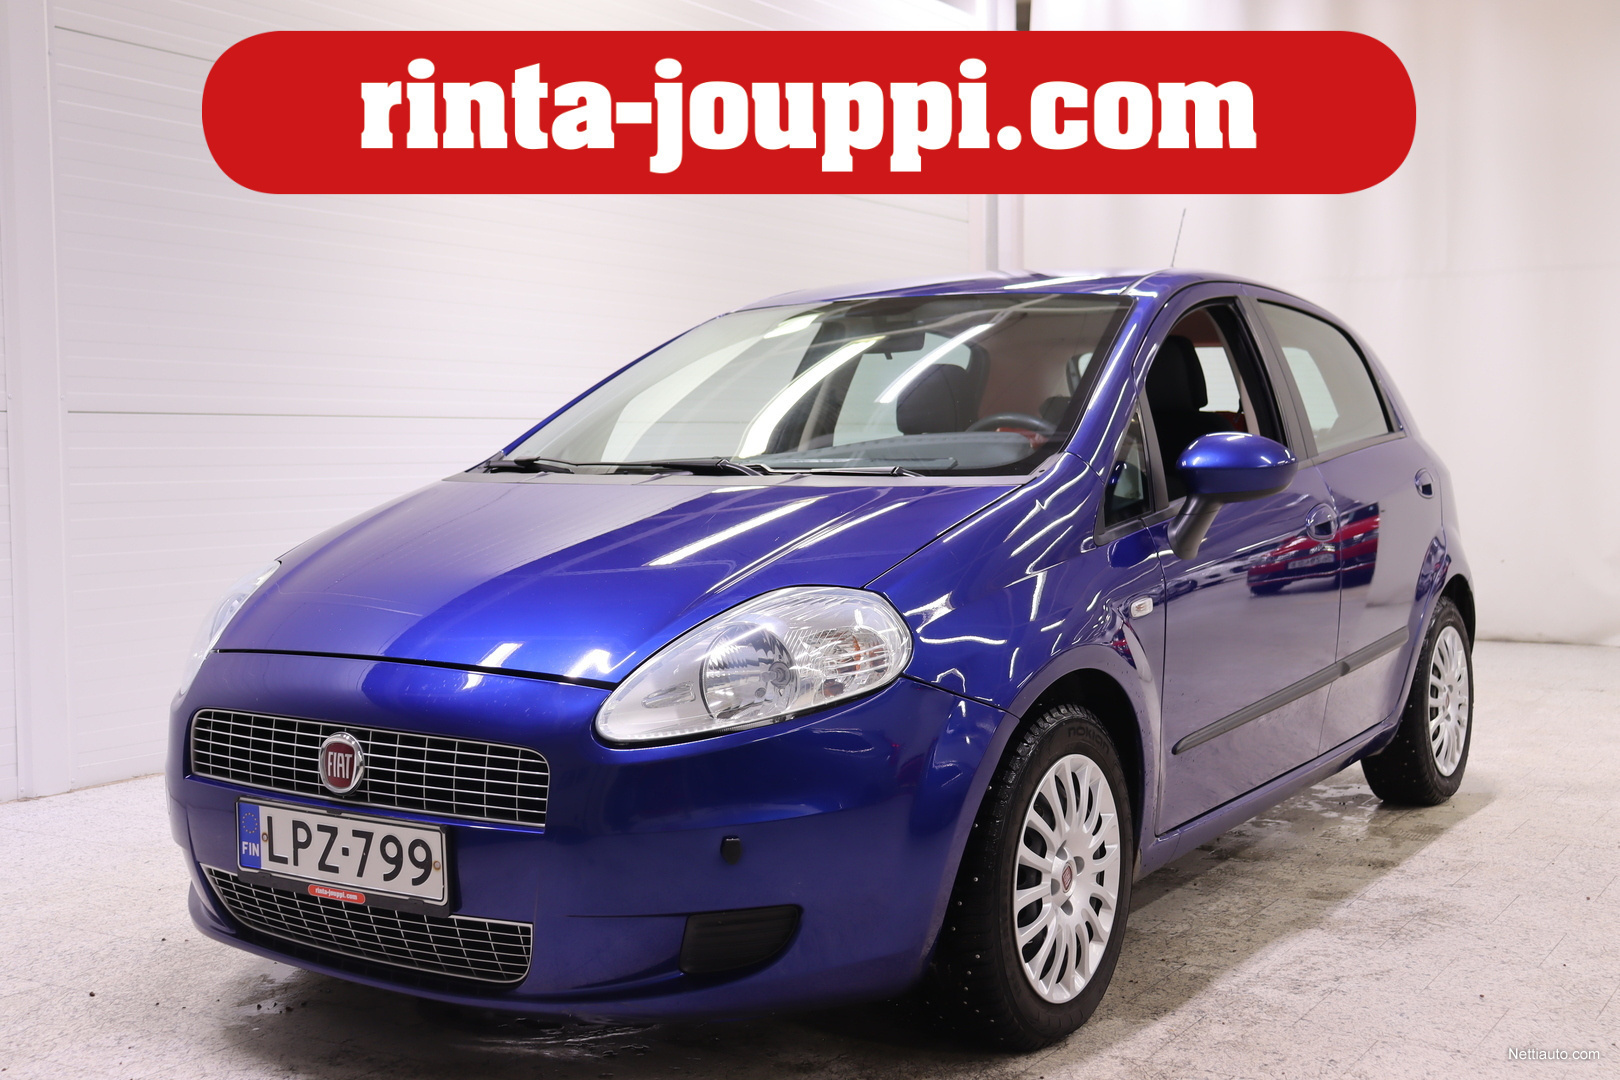 Fiat Grande Punto 1,4 77 Dynamic 5D - Suomi-auto, 2x avaimet, Ilmastointi,  Moottorilämmitin, Metalliväri ym! Hatchback 2009 - Used vehicle - Nettiauto